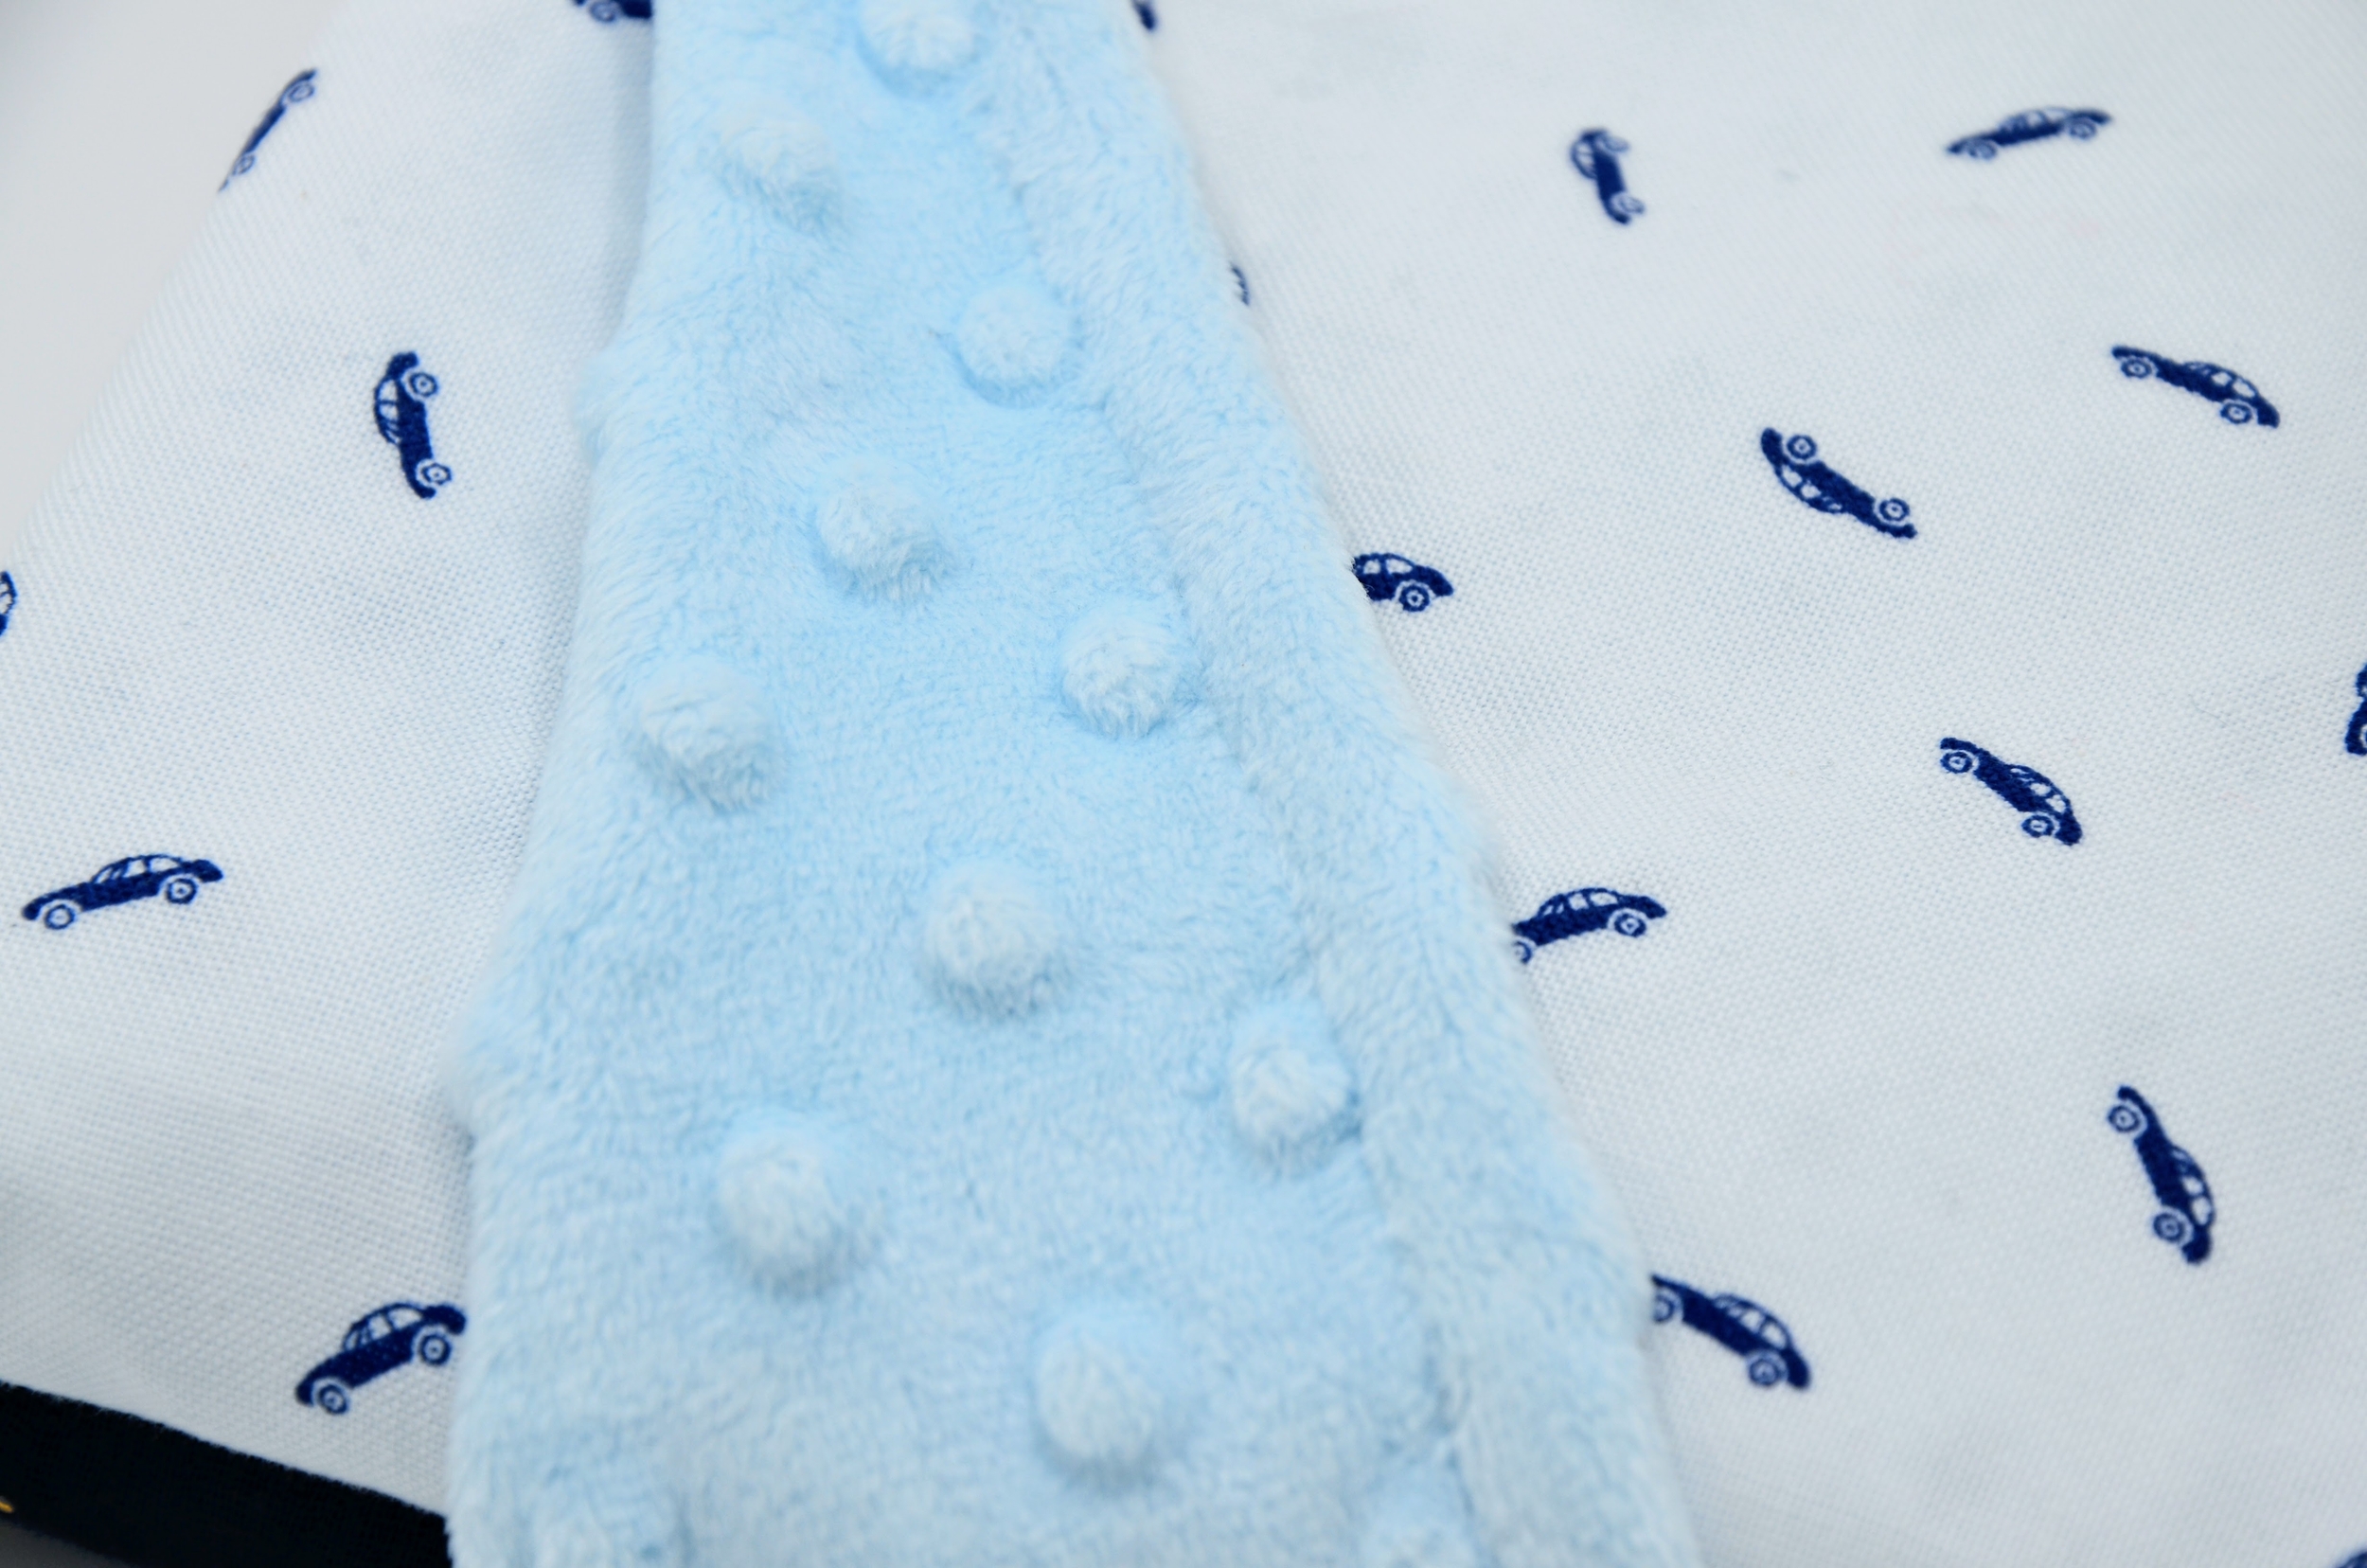 couverture bebe plaid double gaze et polaire minkee doux voitures bleu marine pois doré (3)